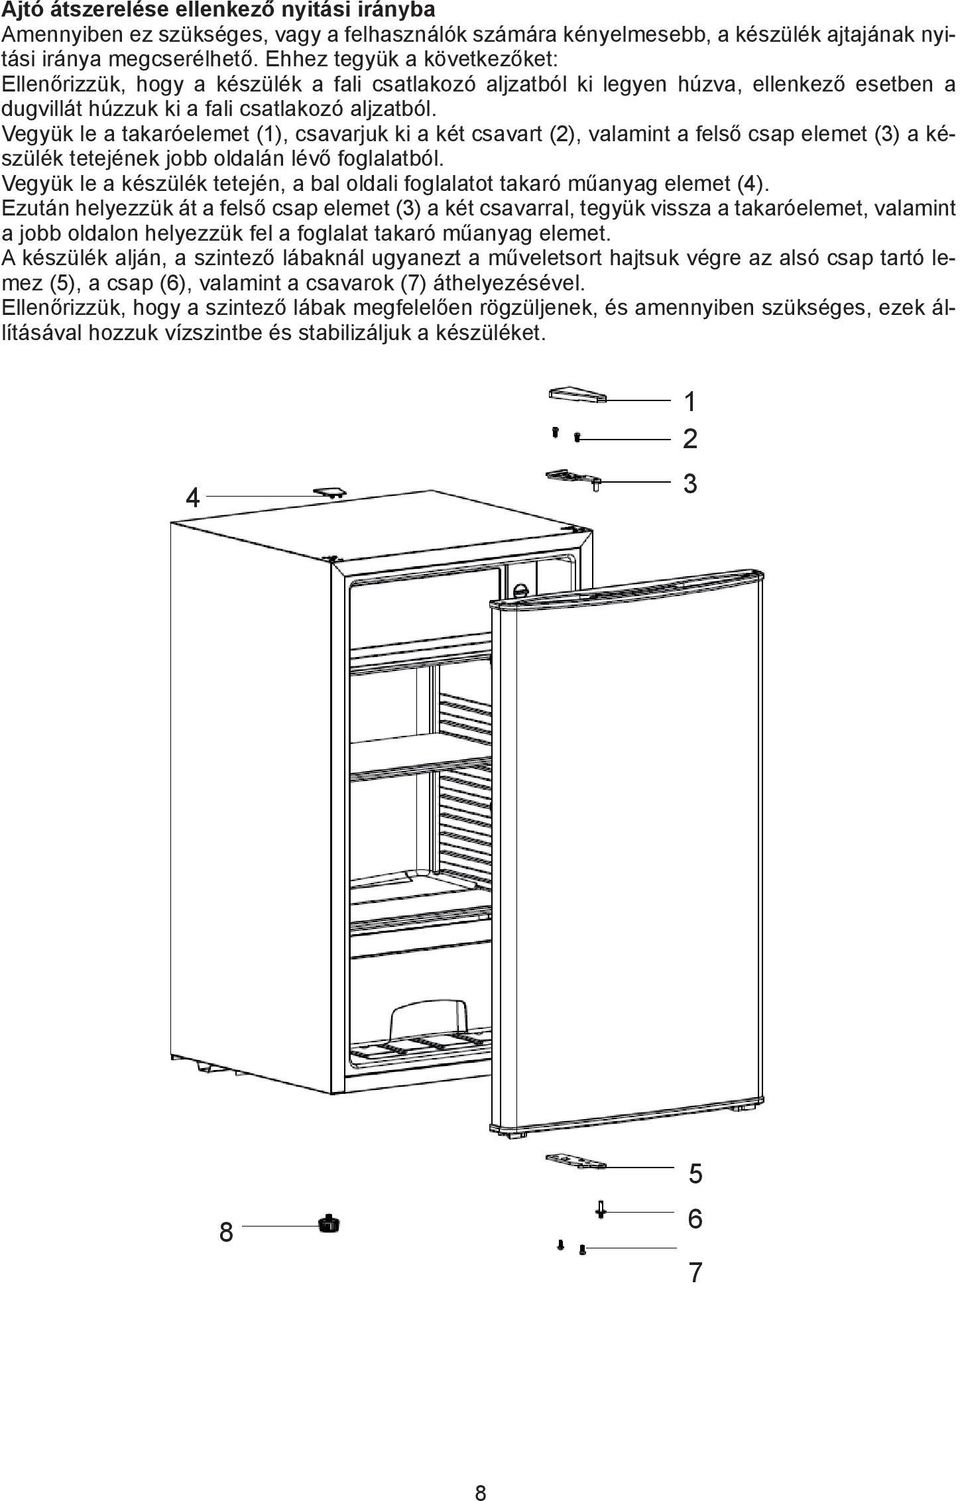 Remove Ajtó the átszerelése cover (1), ellenkező the two nyitási screws irányba (2) and the bracket (3) from the right seat on the top of Amennyiben the refrigerator.